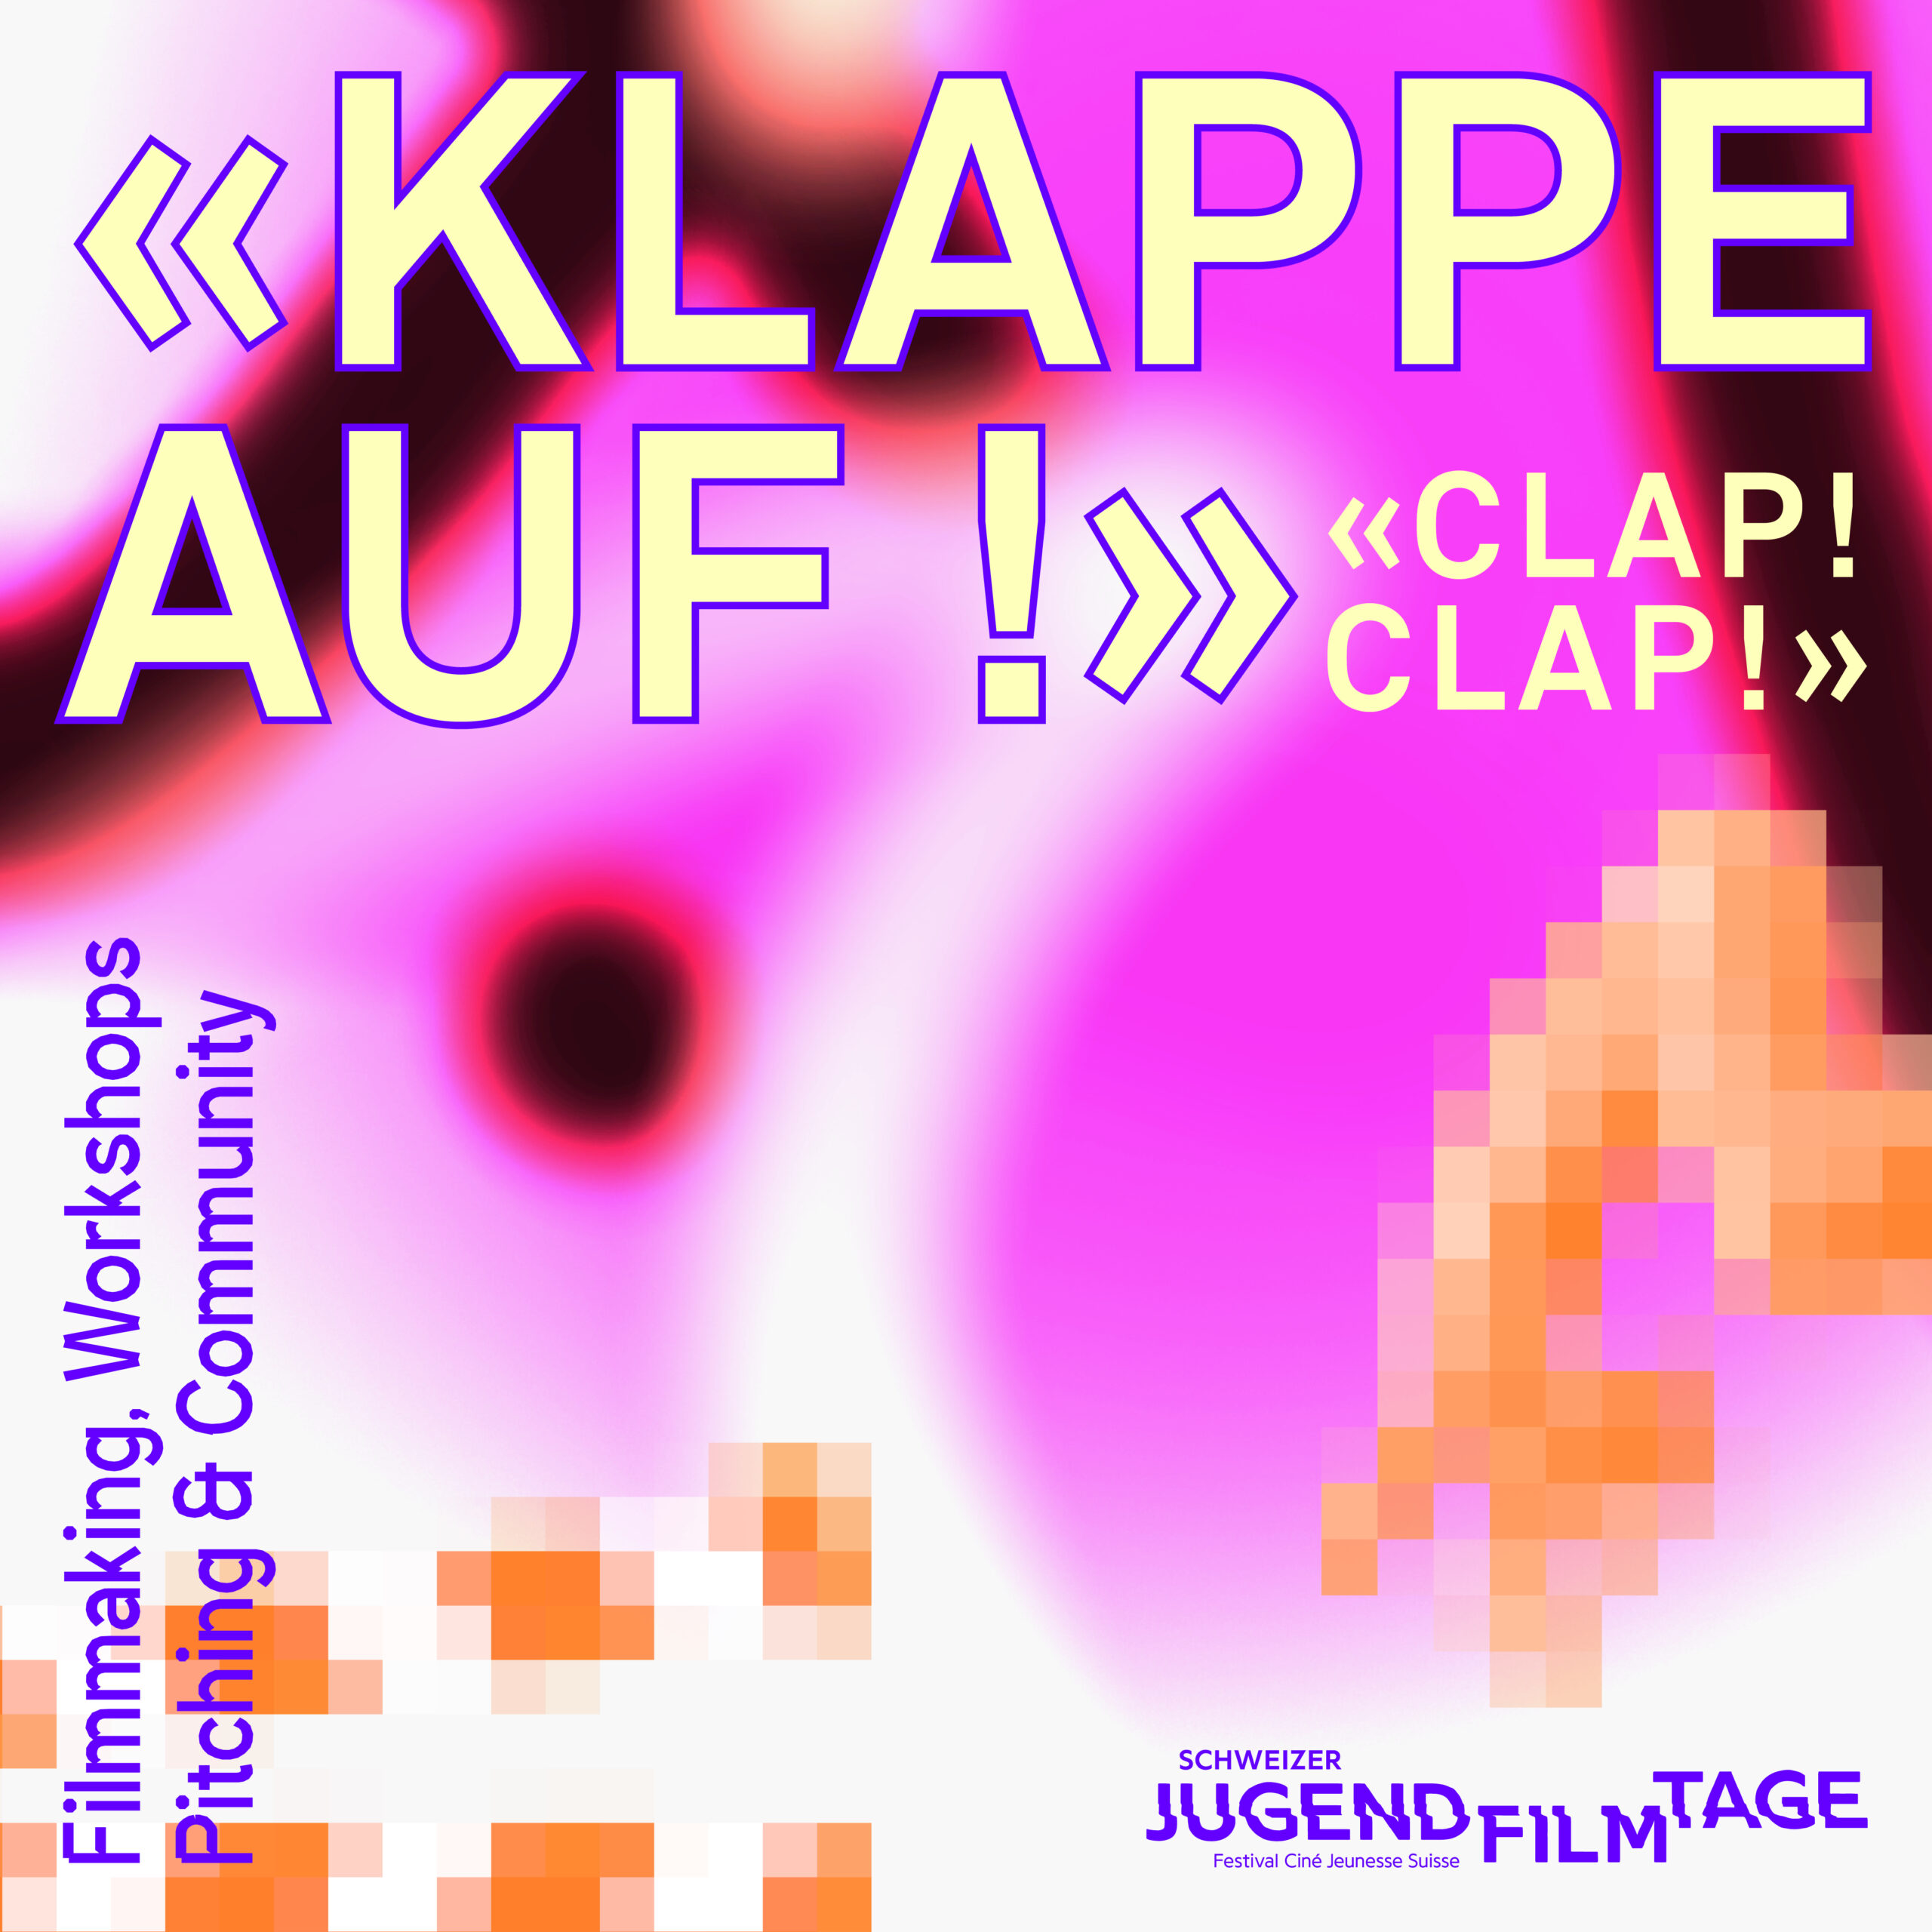 «Clap! Clap!» Starterkit Workshop